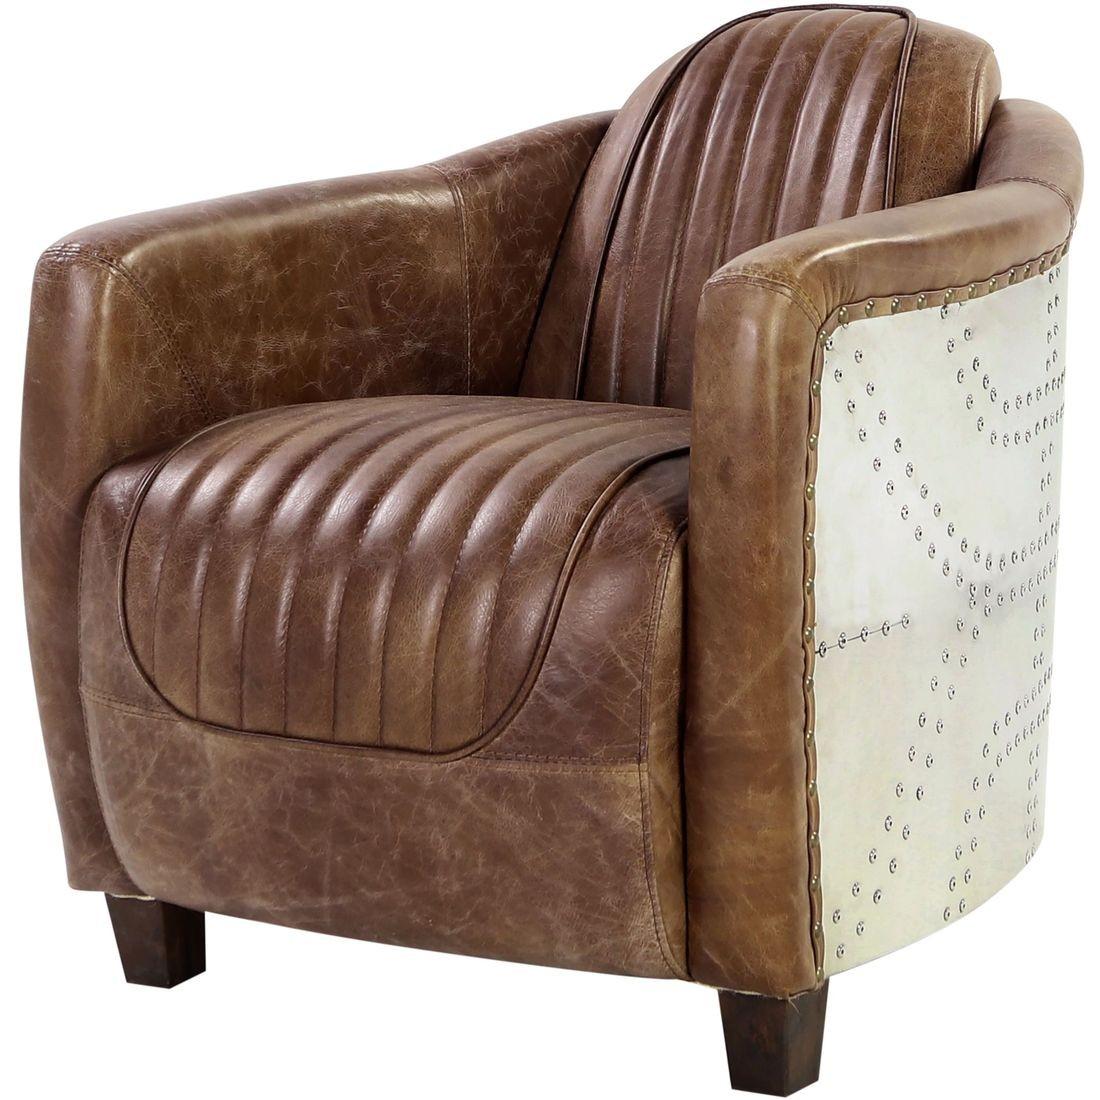 

    
53545-3PC Industrial Vintage Brown Top Grain Leather Sofa Set 3Pcs Acme Brancaster
